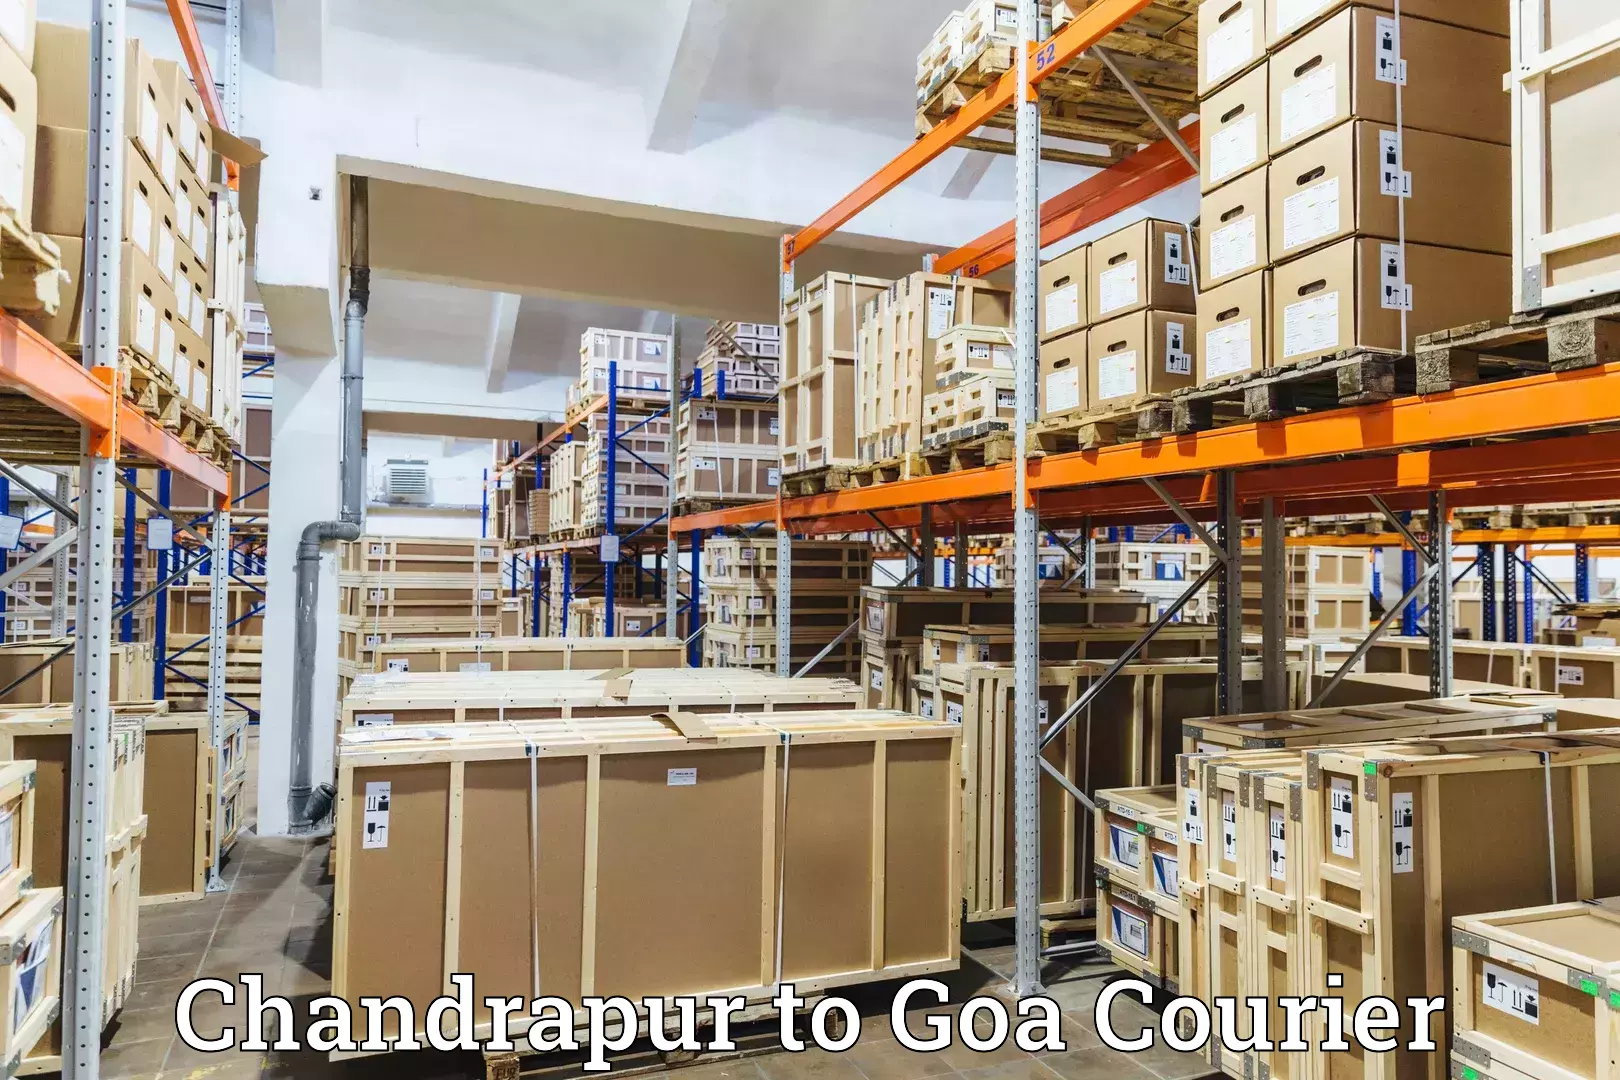 Digital courier platforms Chandrapur to Ponda